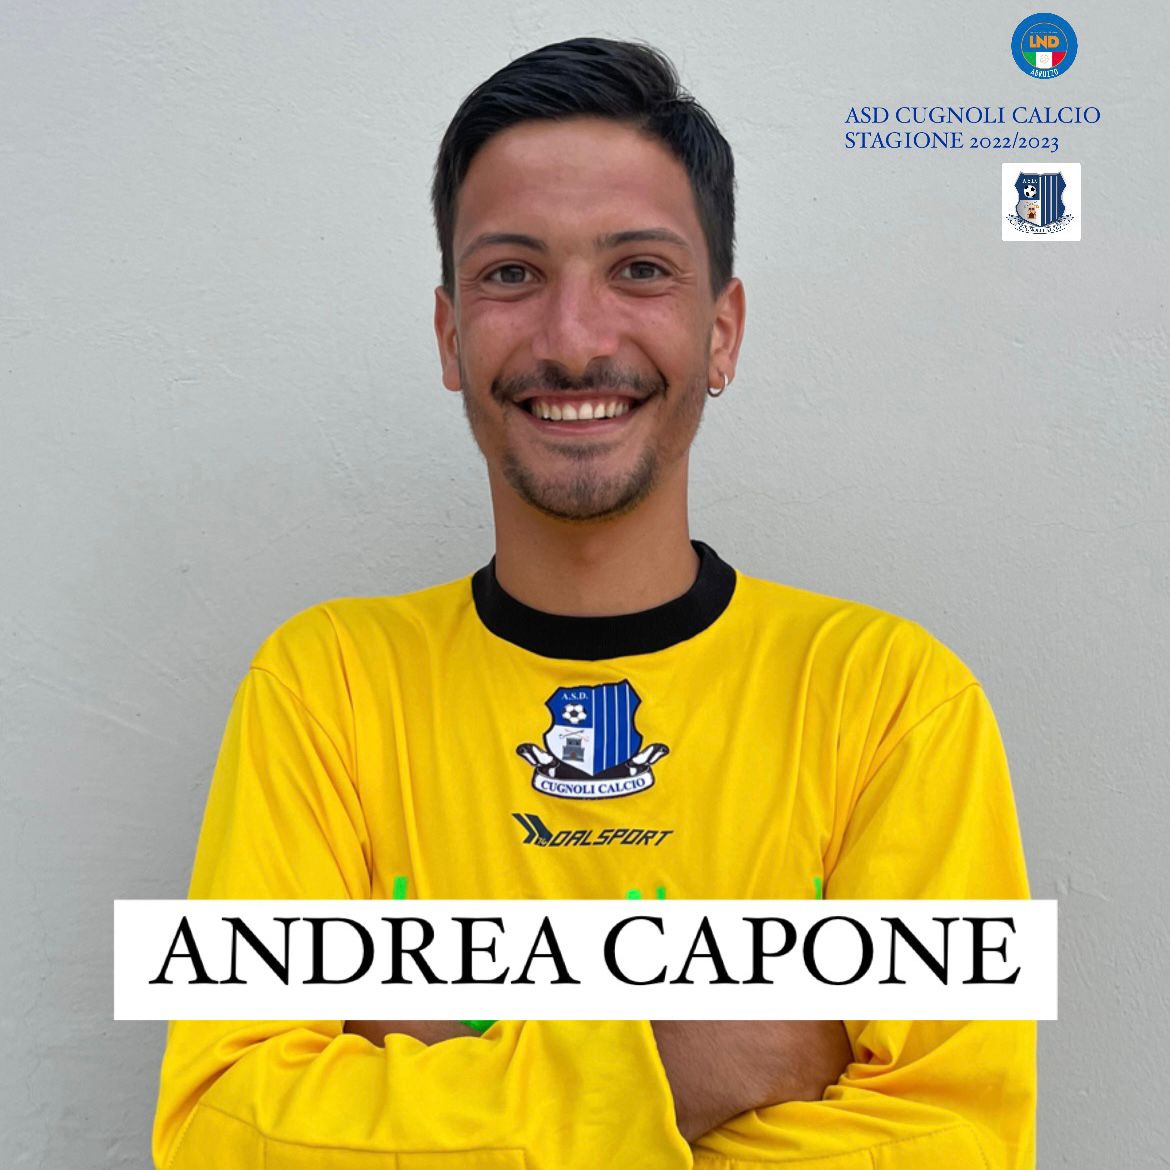 Andrea Capone